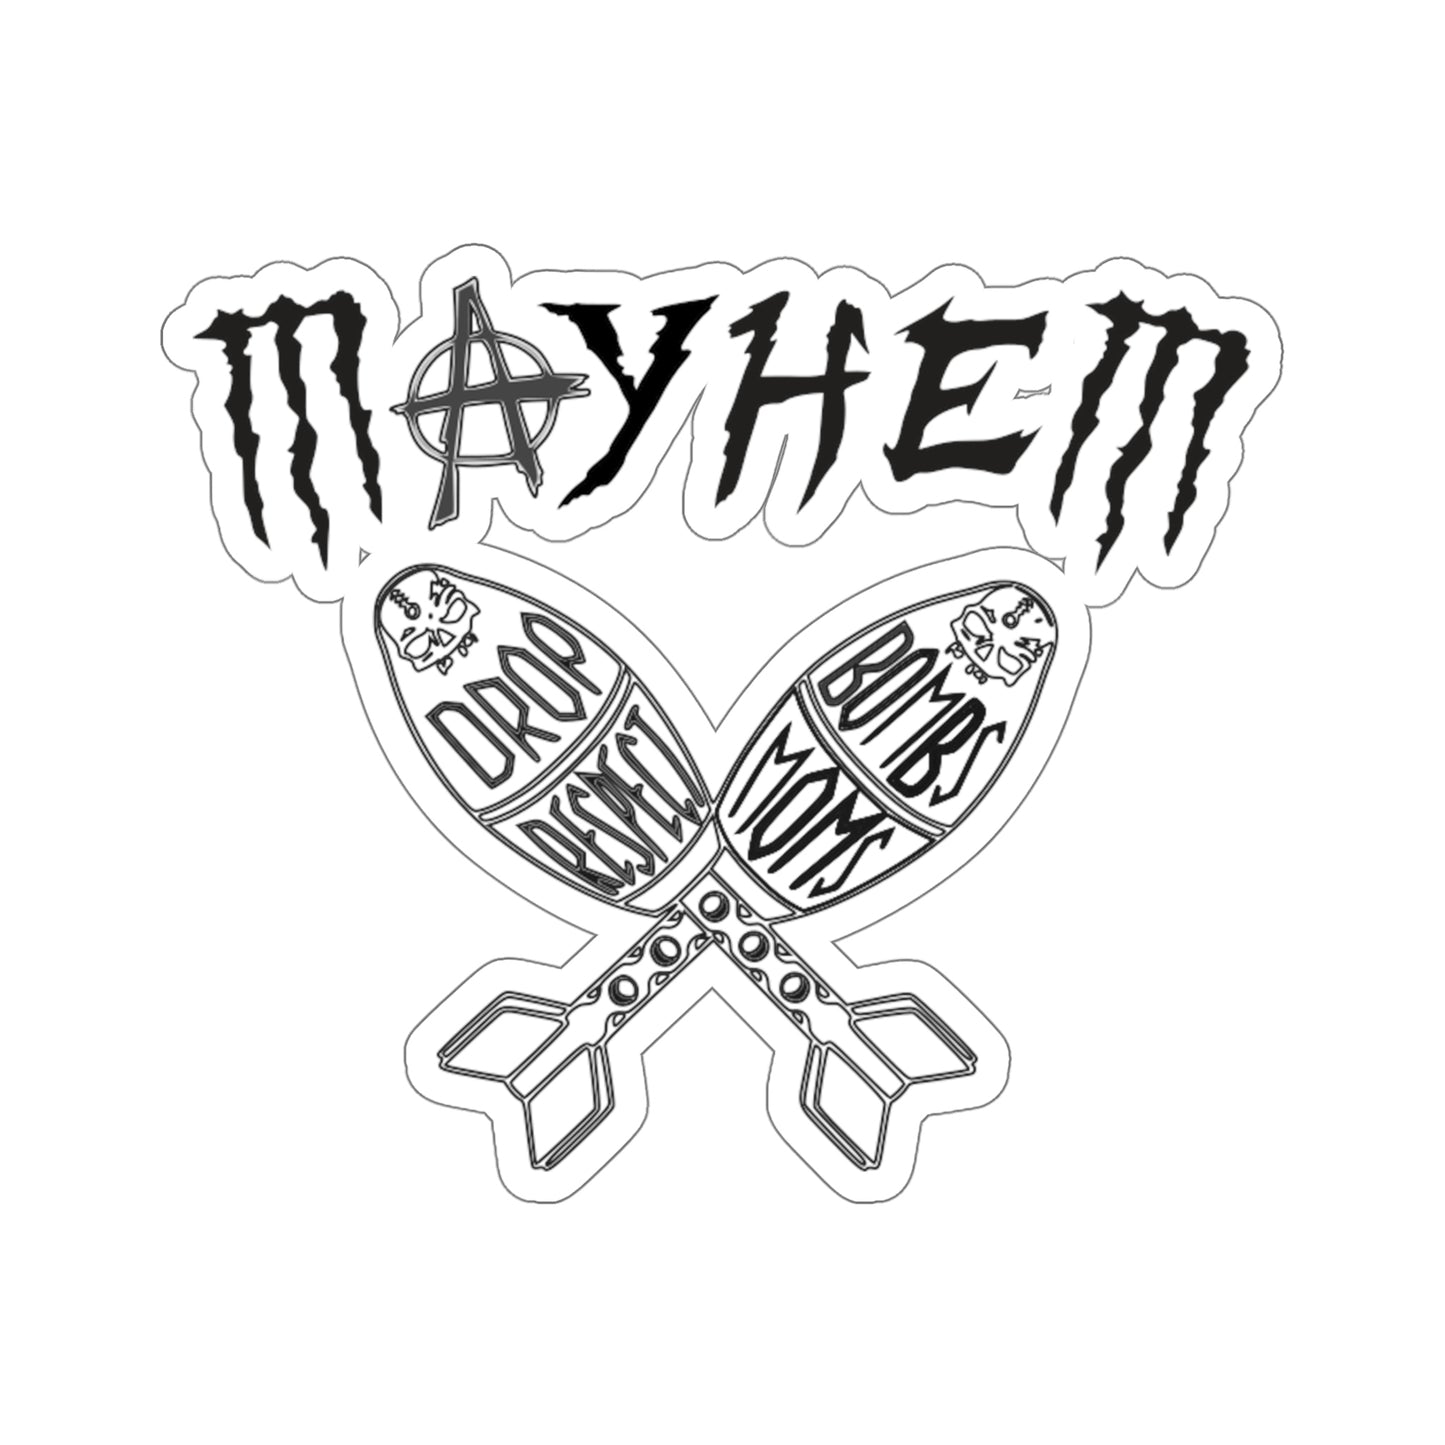 Legacy Mayhem Black Kiss-Cut Stickers